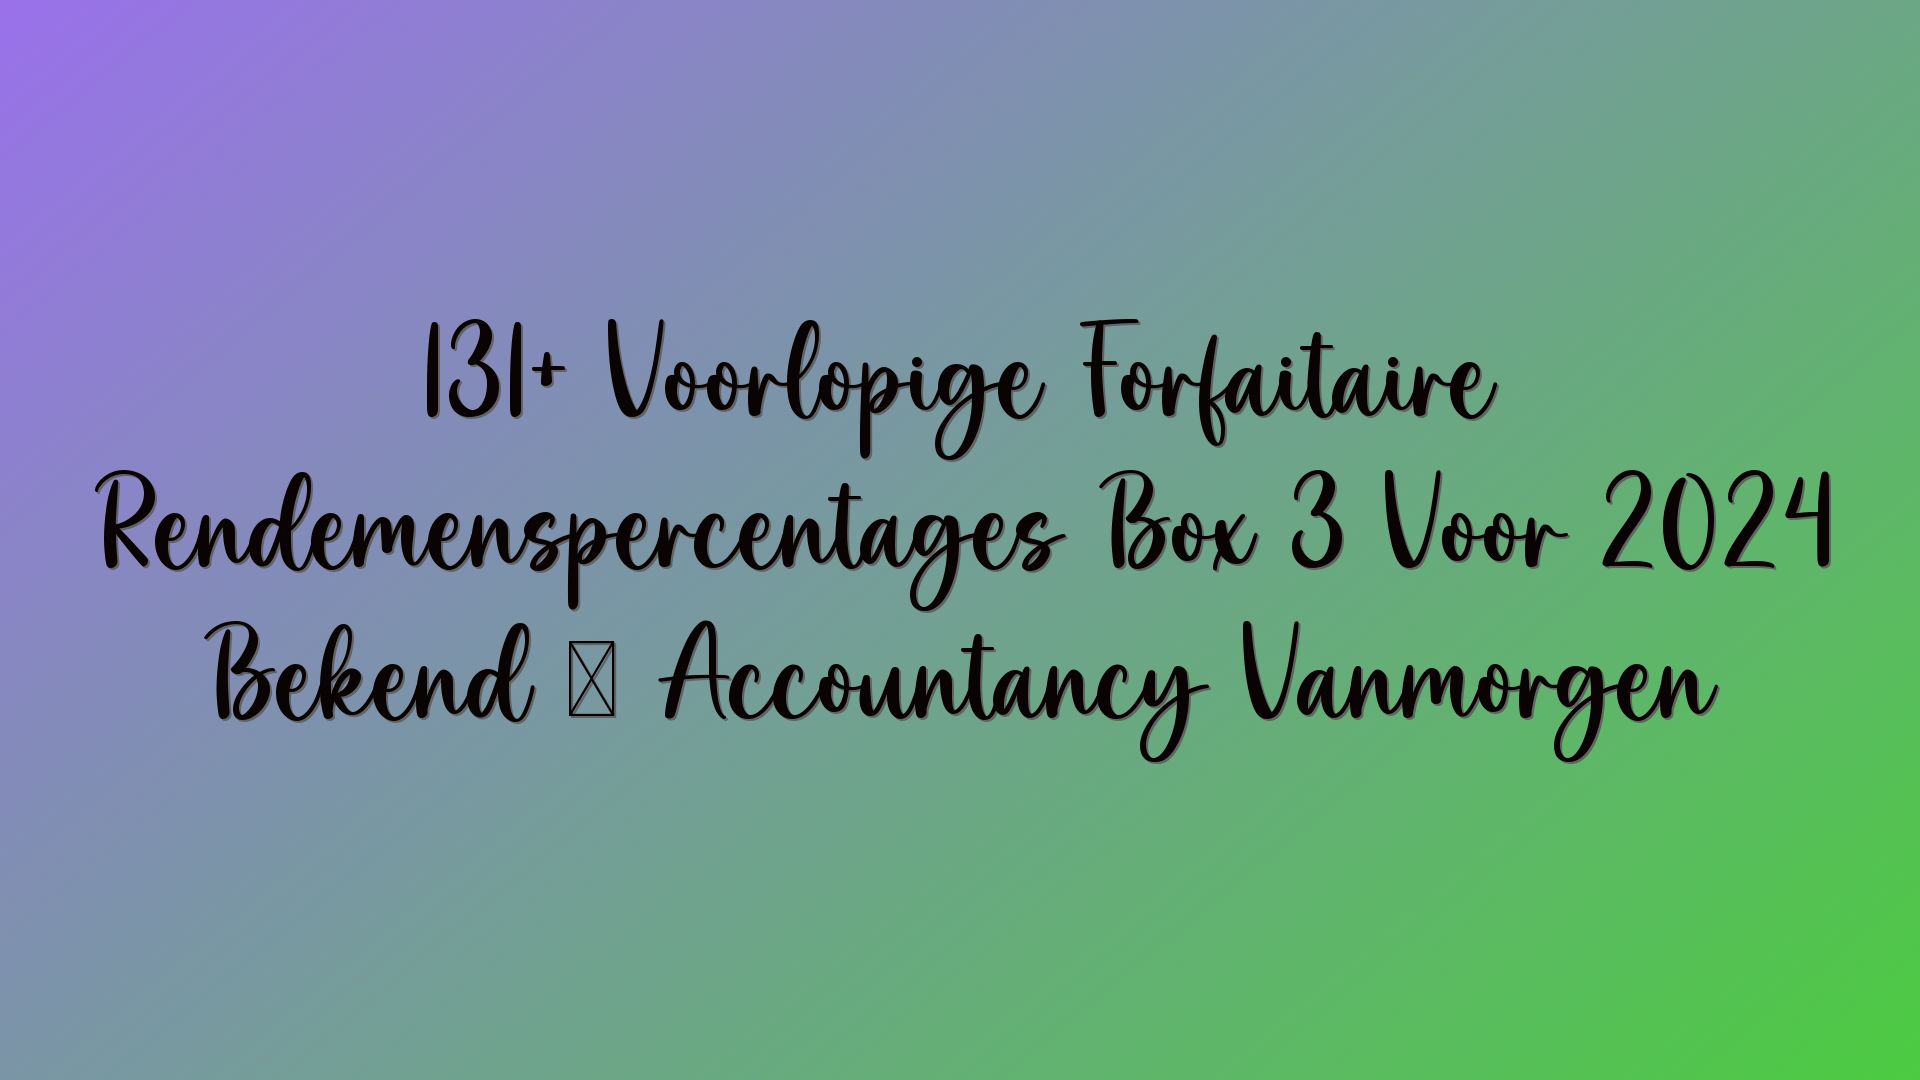 131+ Voorlopige Forfaitaire Rendemenspercentages Box 3 Voor 2024 Bekend · Accountancy Vanmorgen